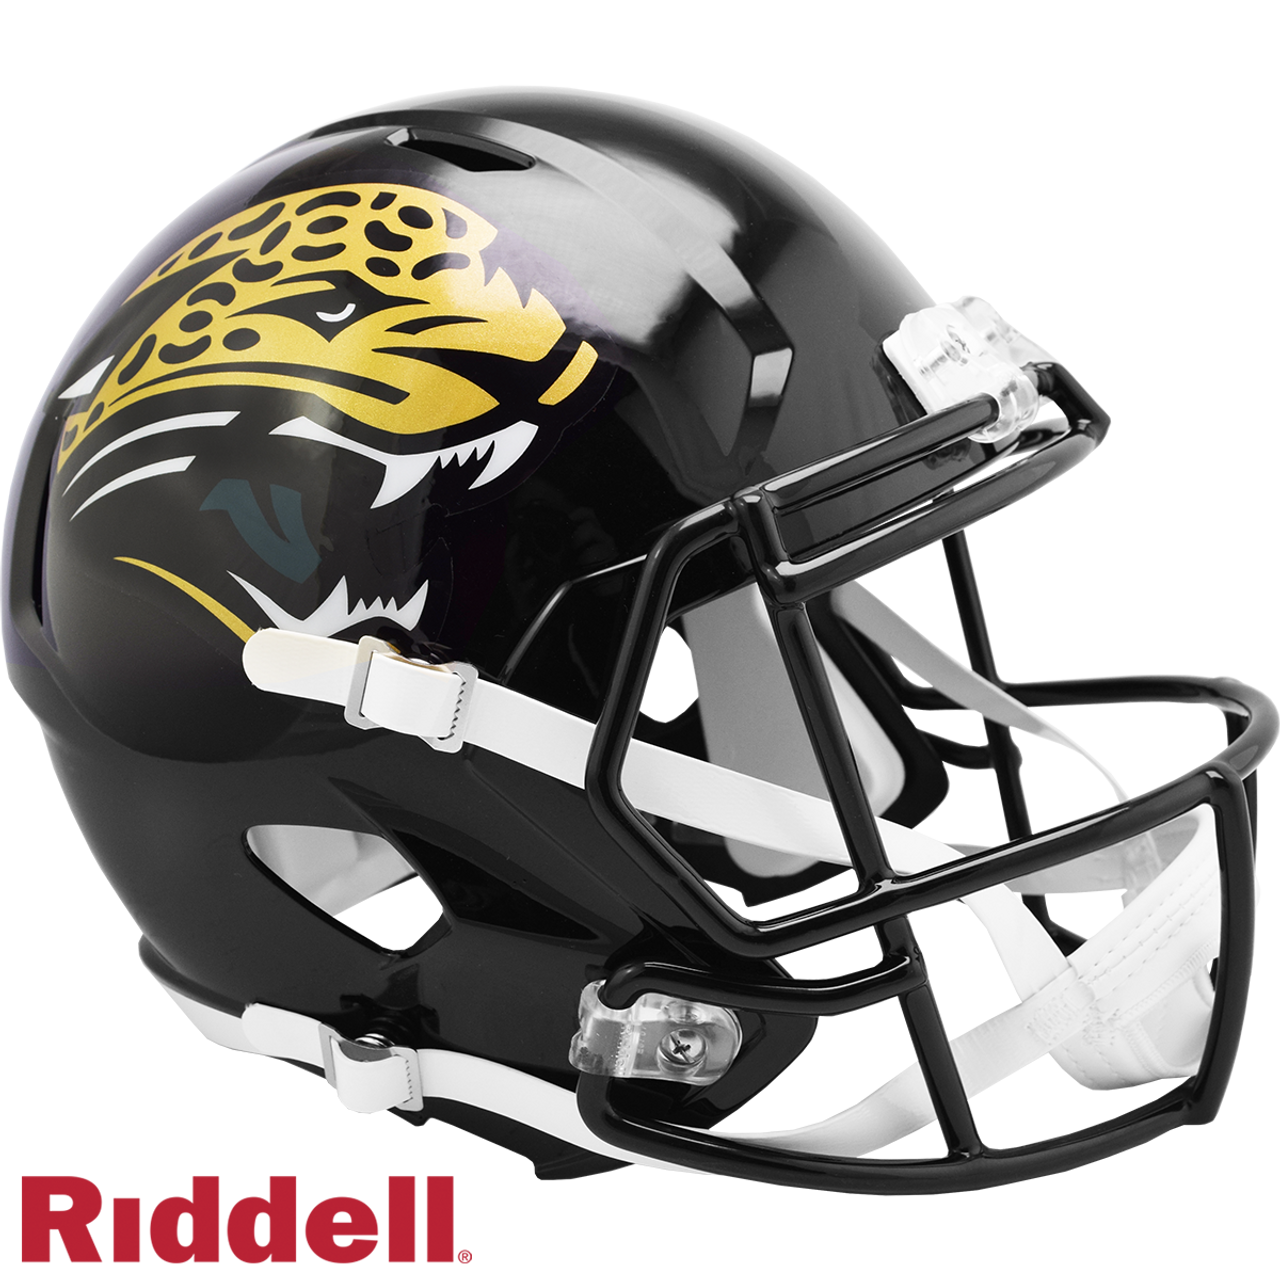 jacksonville jaguars new helmets